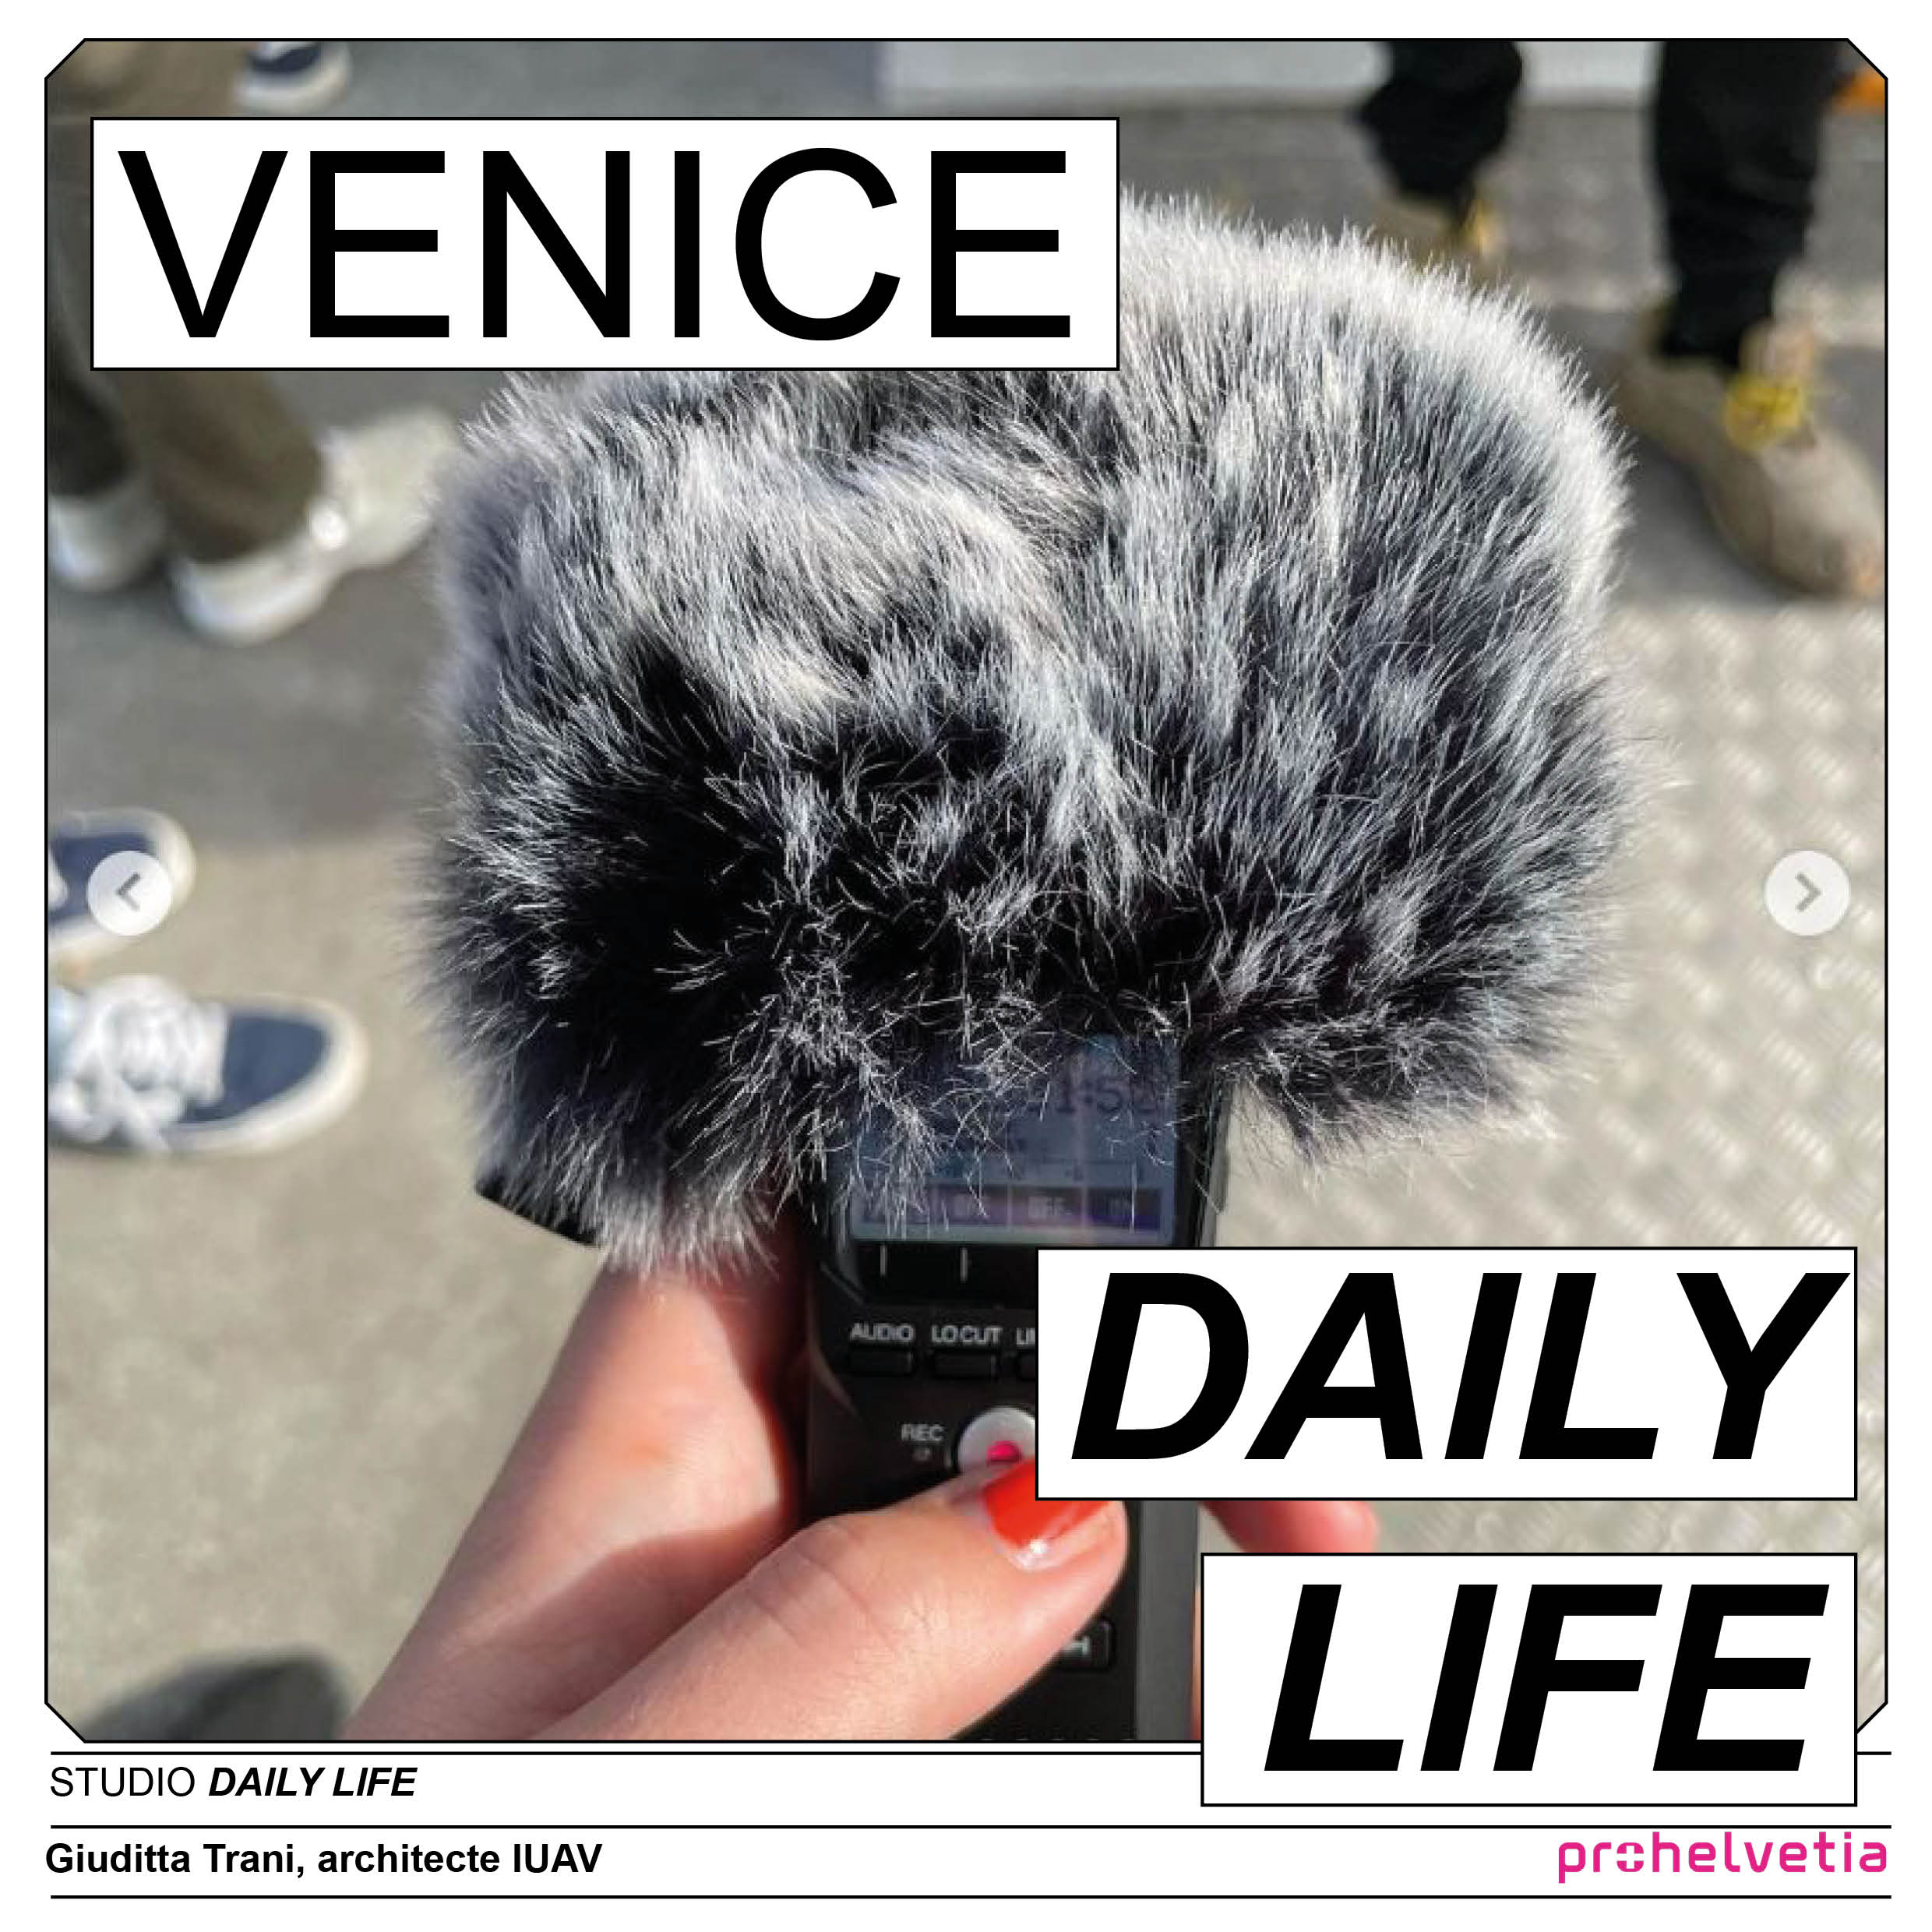 venice daily life